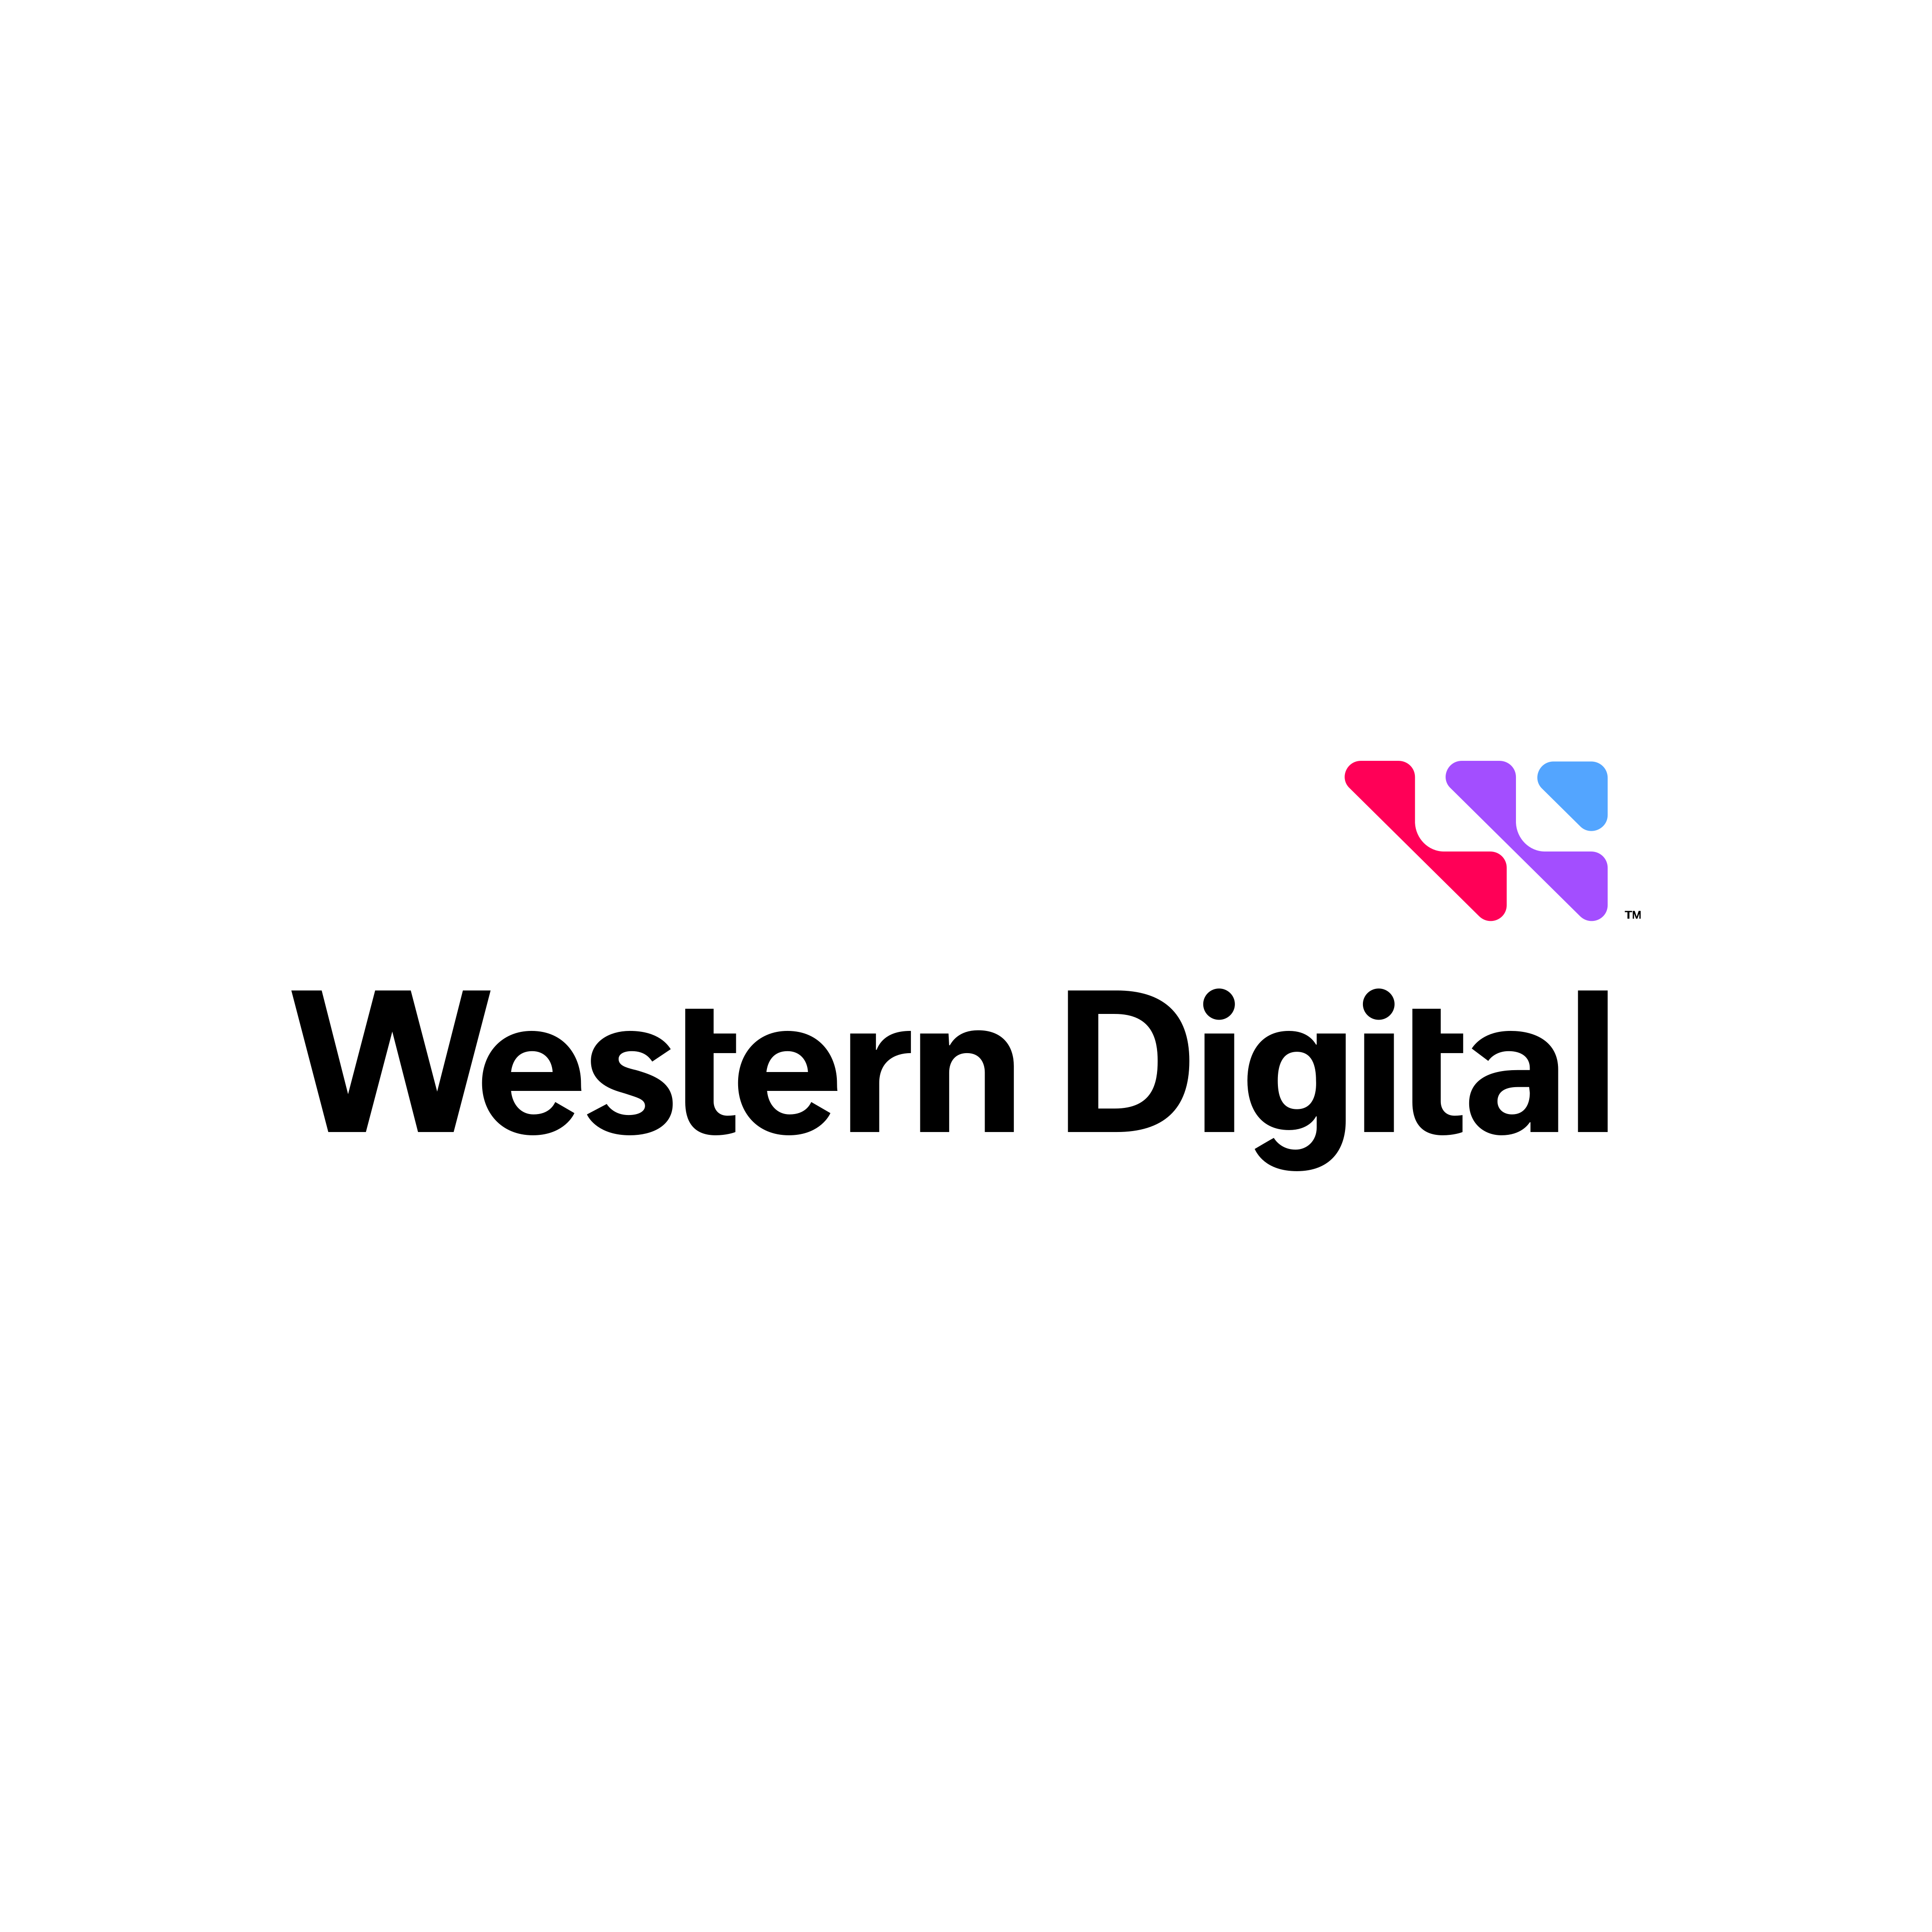 western digital logo 0 1 - Western Digital Logo